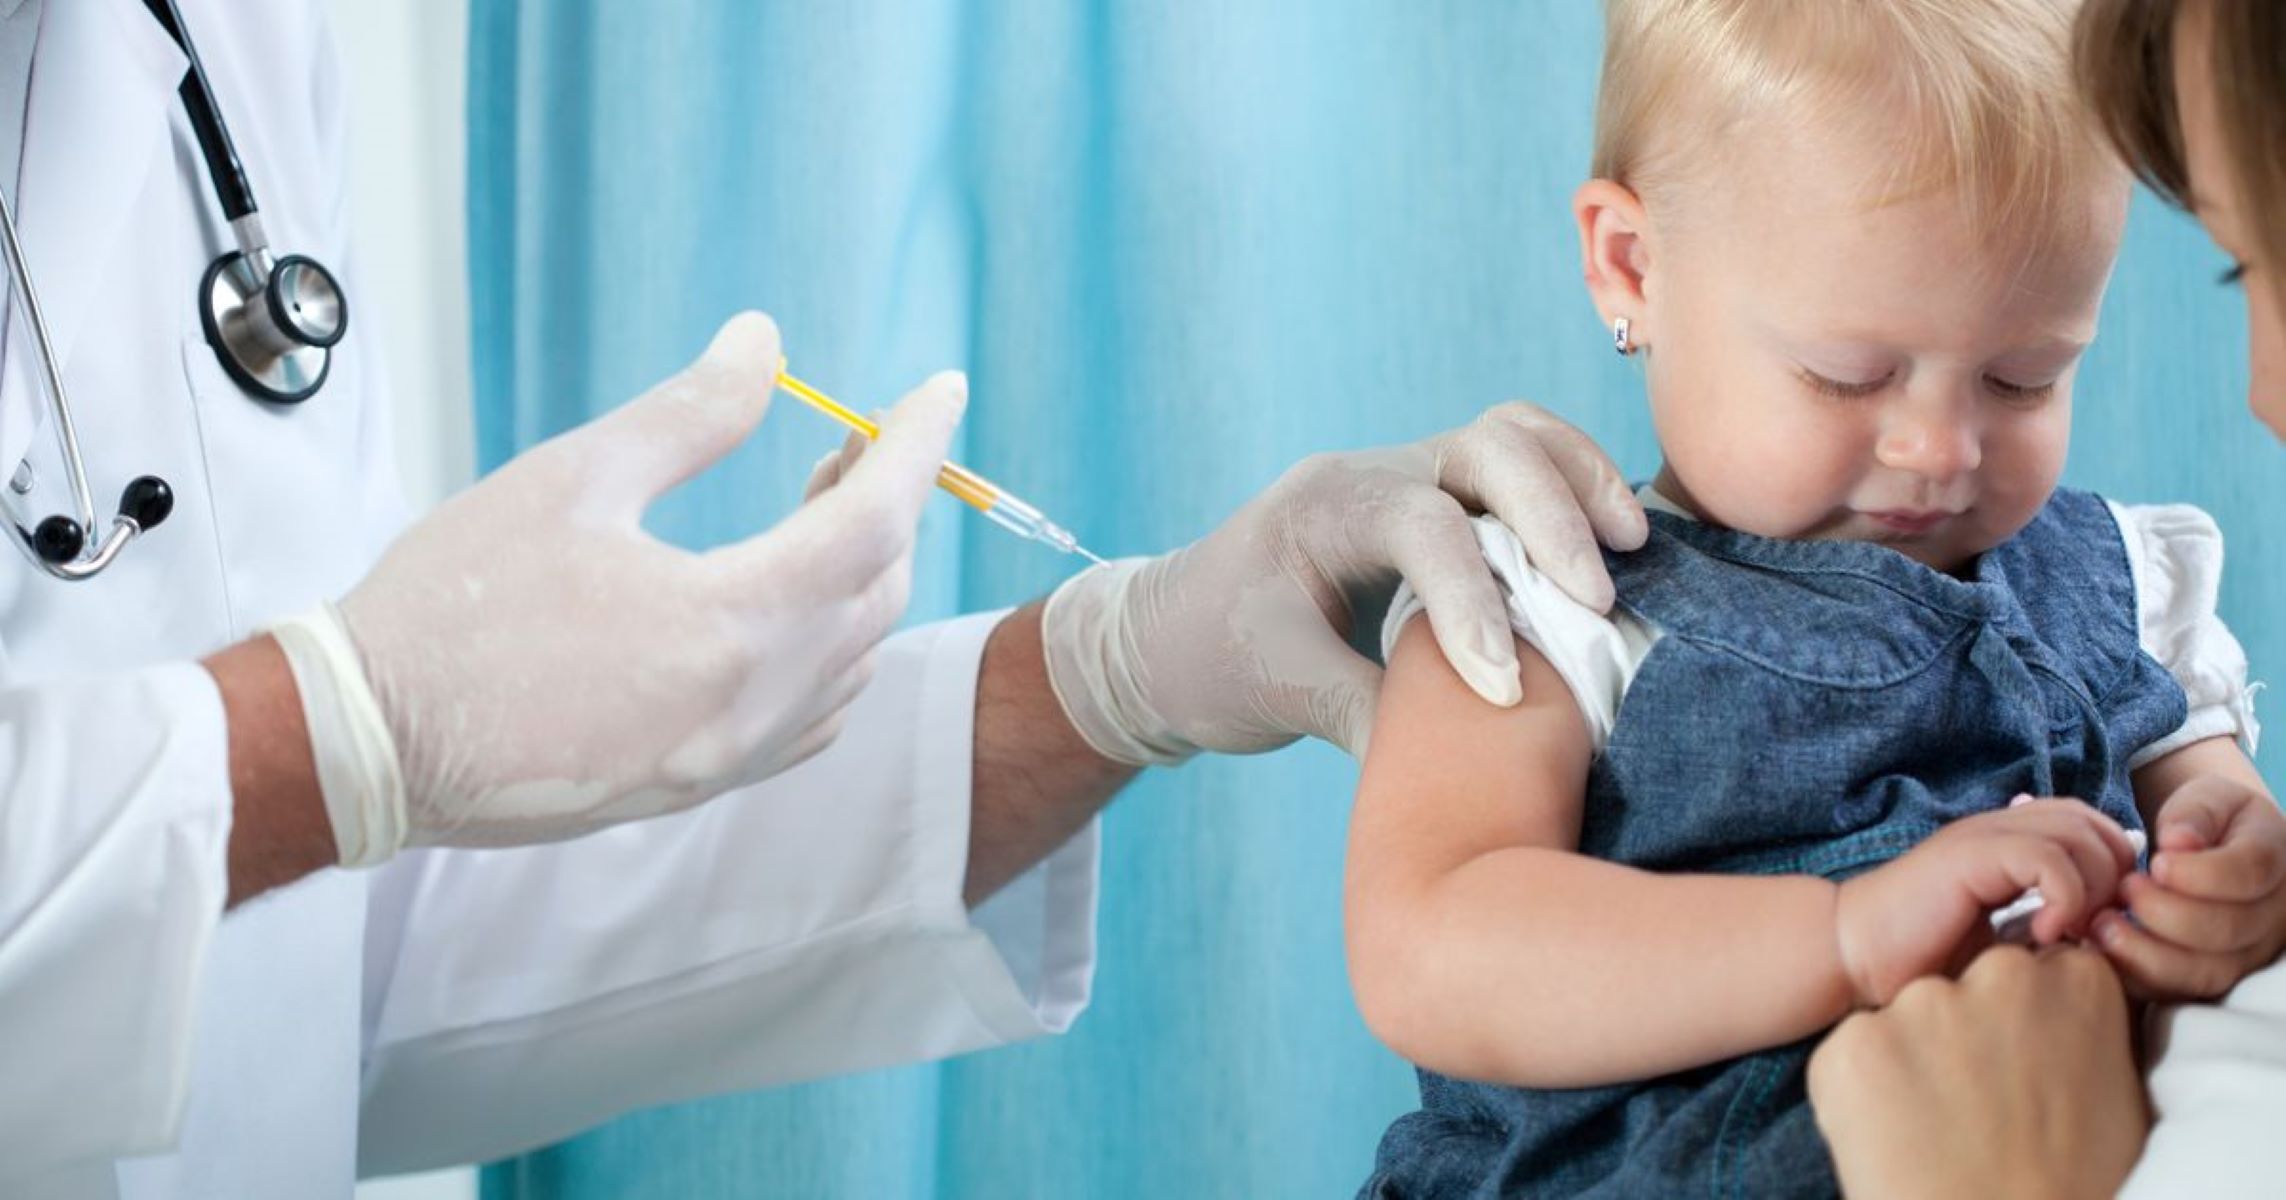 Παιδικά εμβόλια μηνιγγίτιδα Β : Ας μην ξεχνάμε τα παιδικά εμβόλια – Ιδιαίτερη προσοχή στον εμβολιασμό έναντι της μηνιγγίτιδας Β